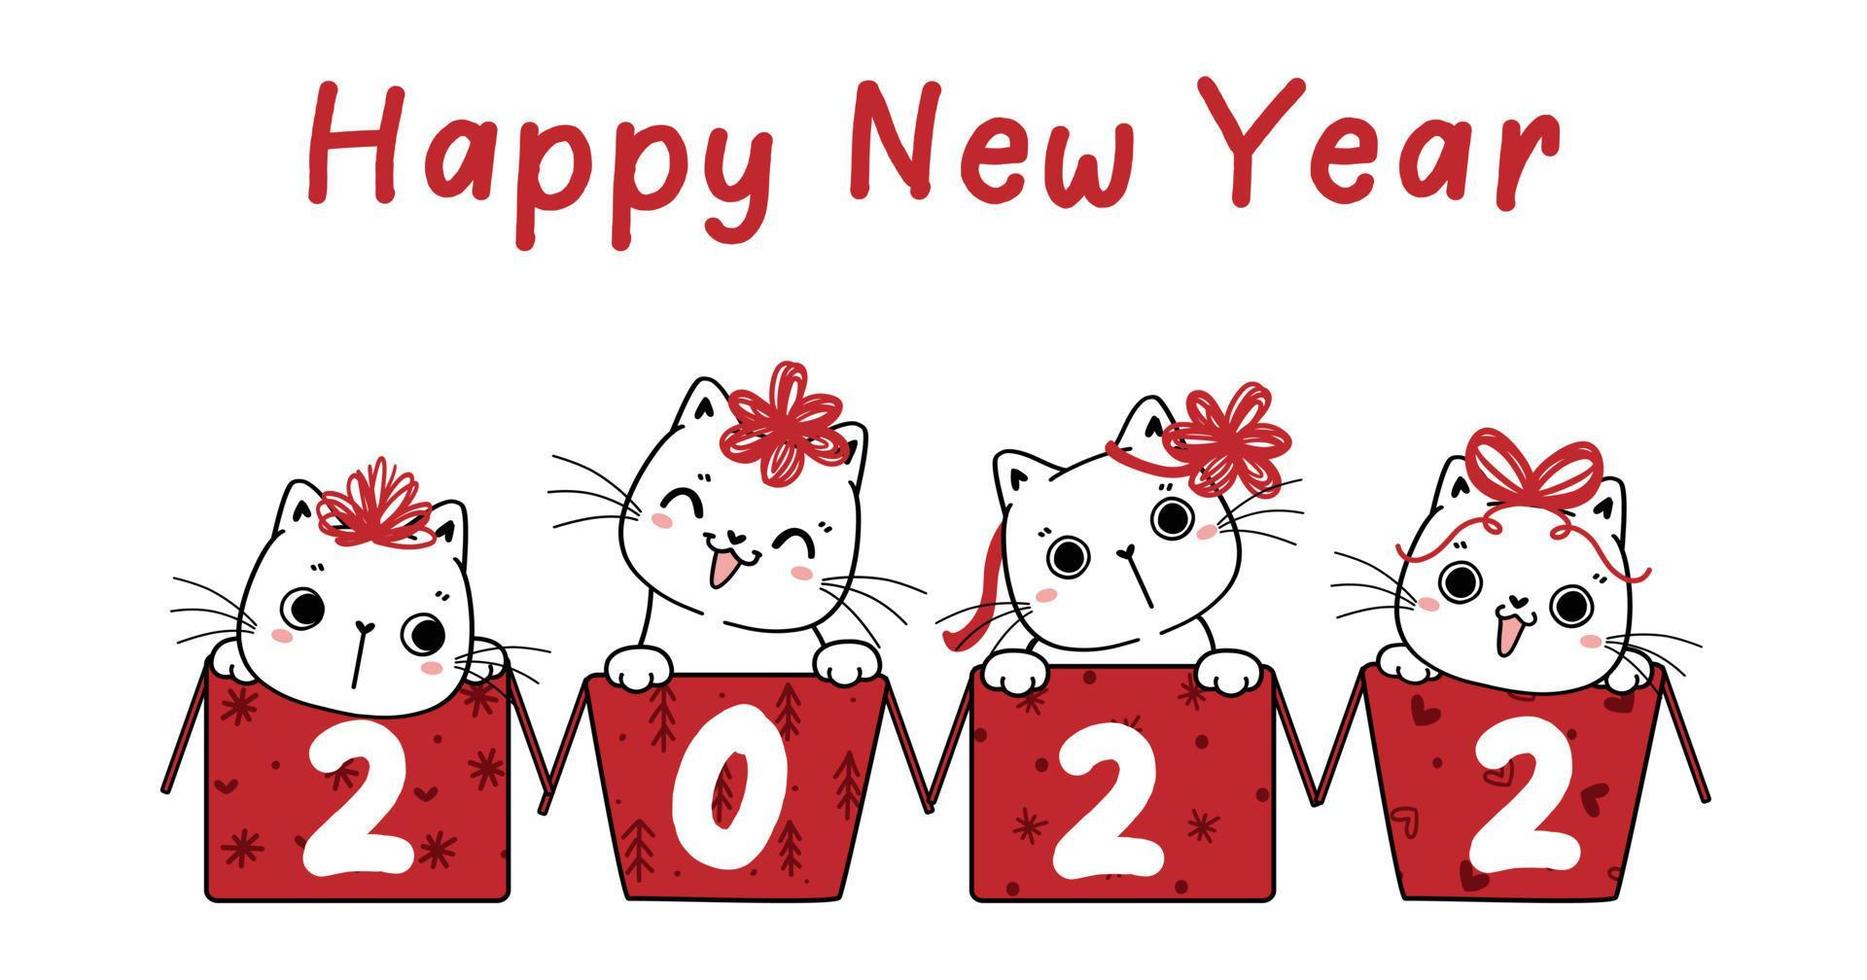 groupe de quatre chatons drôles blancs dans des boîtes, bonne année 2022, idée de carte de voeux ou de bannière, contour dessiné à la main de dessin animé vecteur